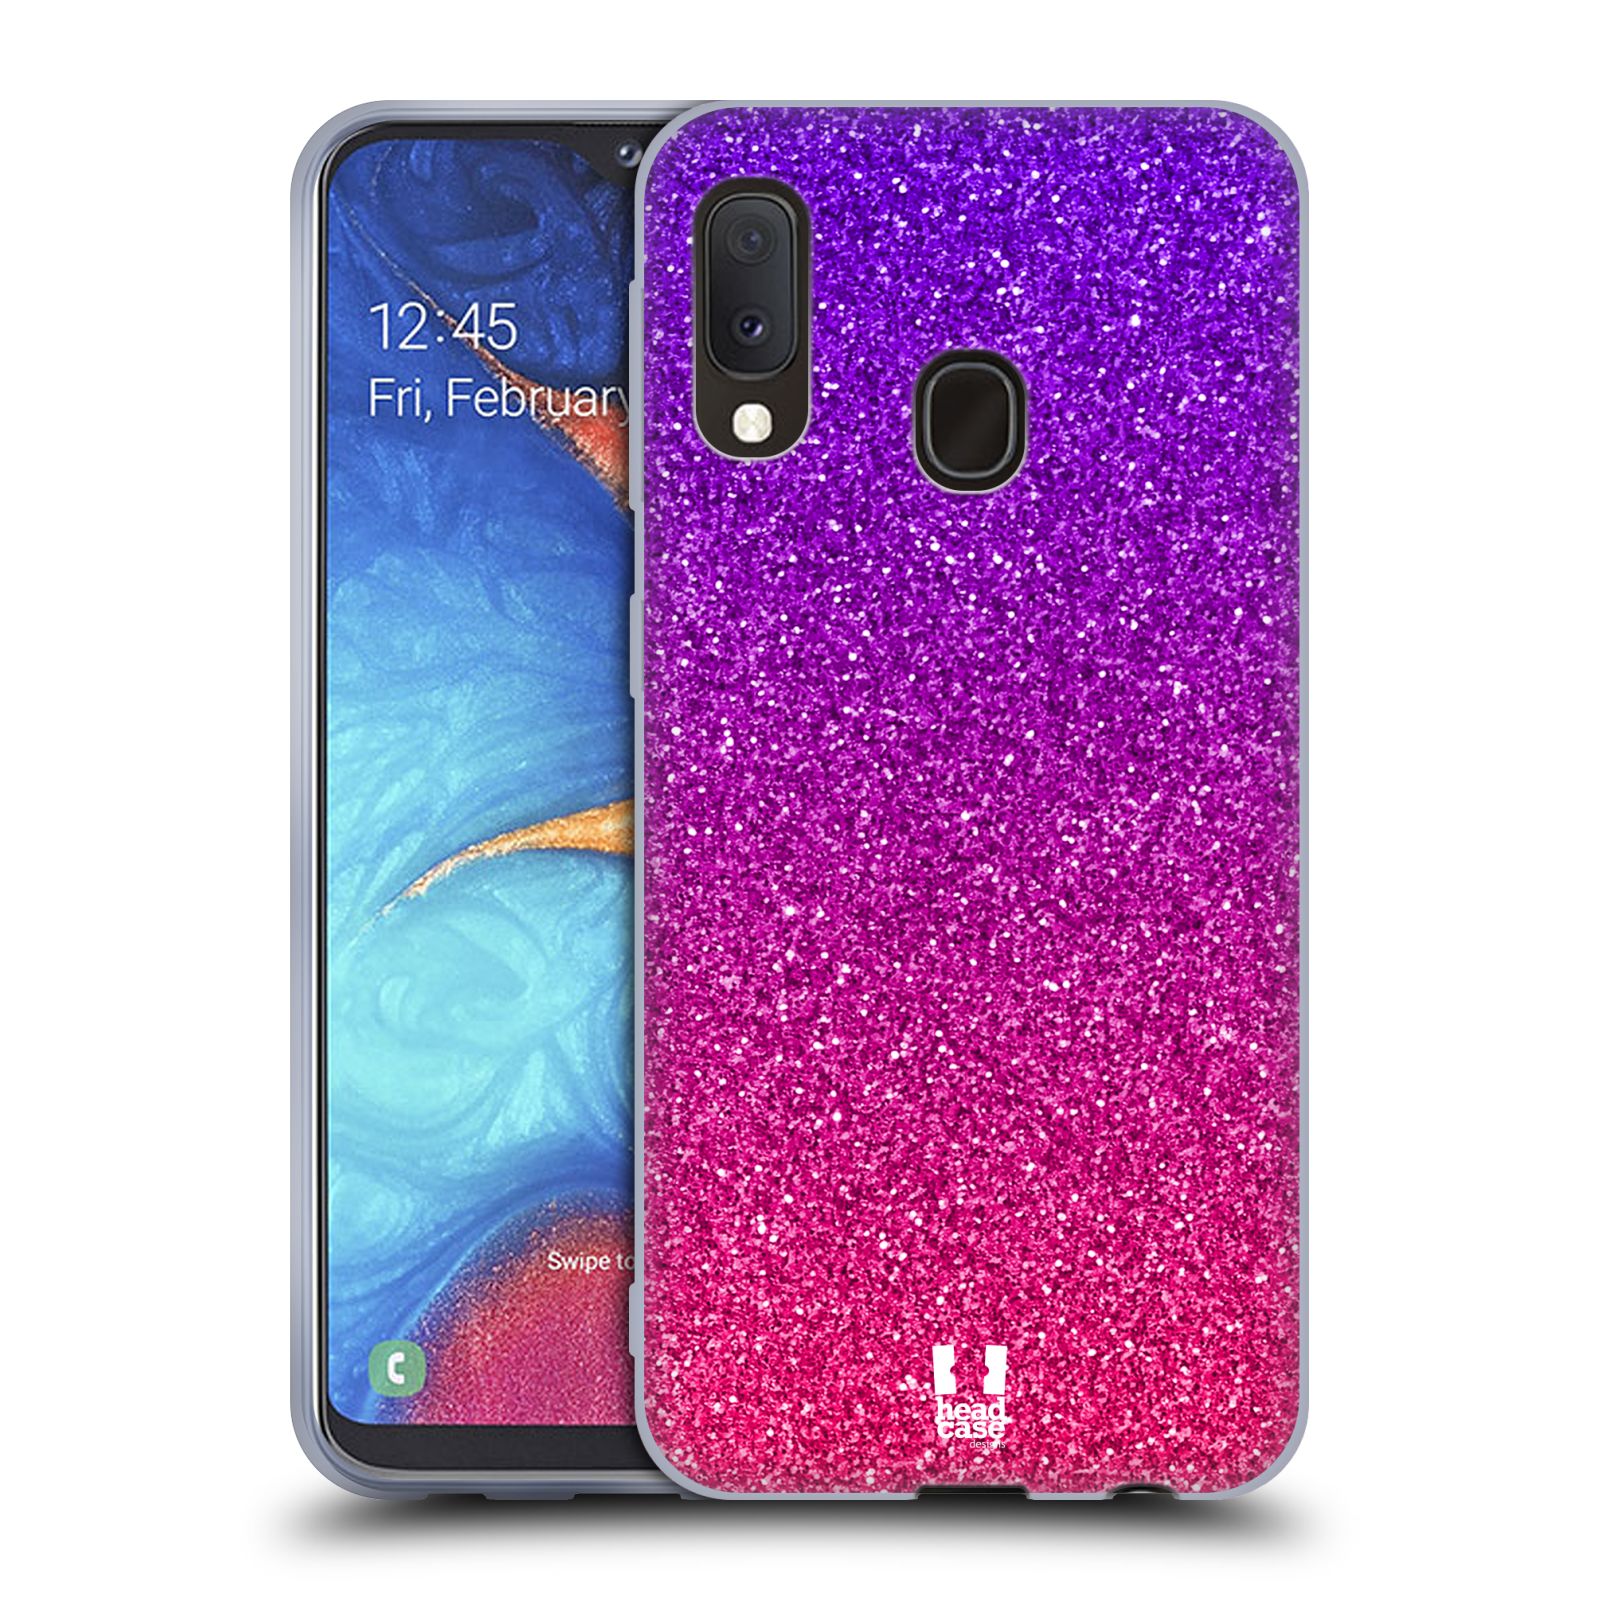 Silikonové pouzdro na mobil Samsung Galaxy A20e - Head Case - Mix Pink (Silikonový kryt, obal, pouzdro na mobilní telefon Samsung Galaxy A20e A202F Dual SIM s motivem Mix Pink)